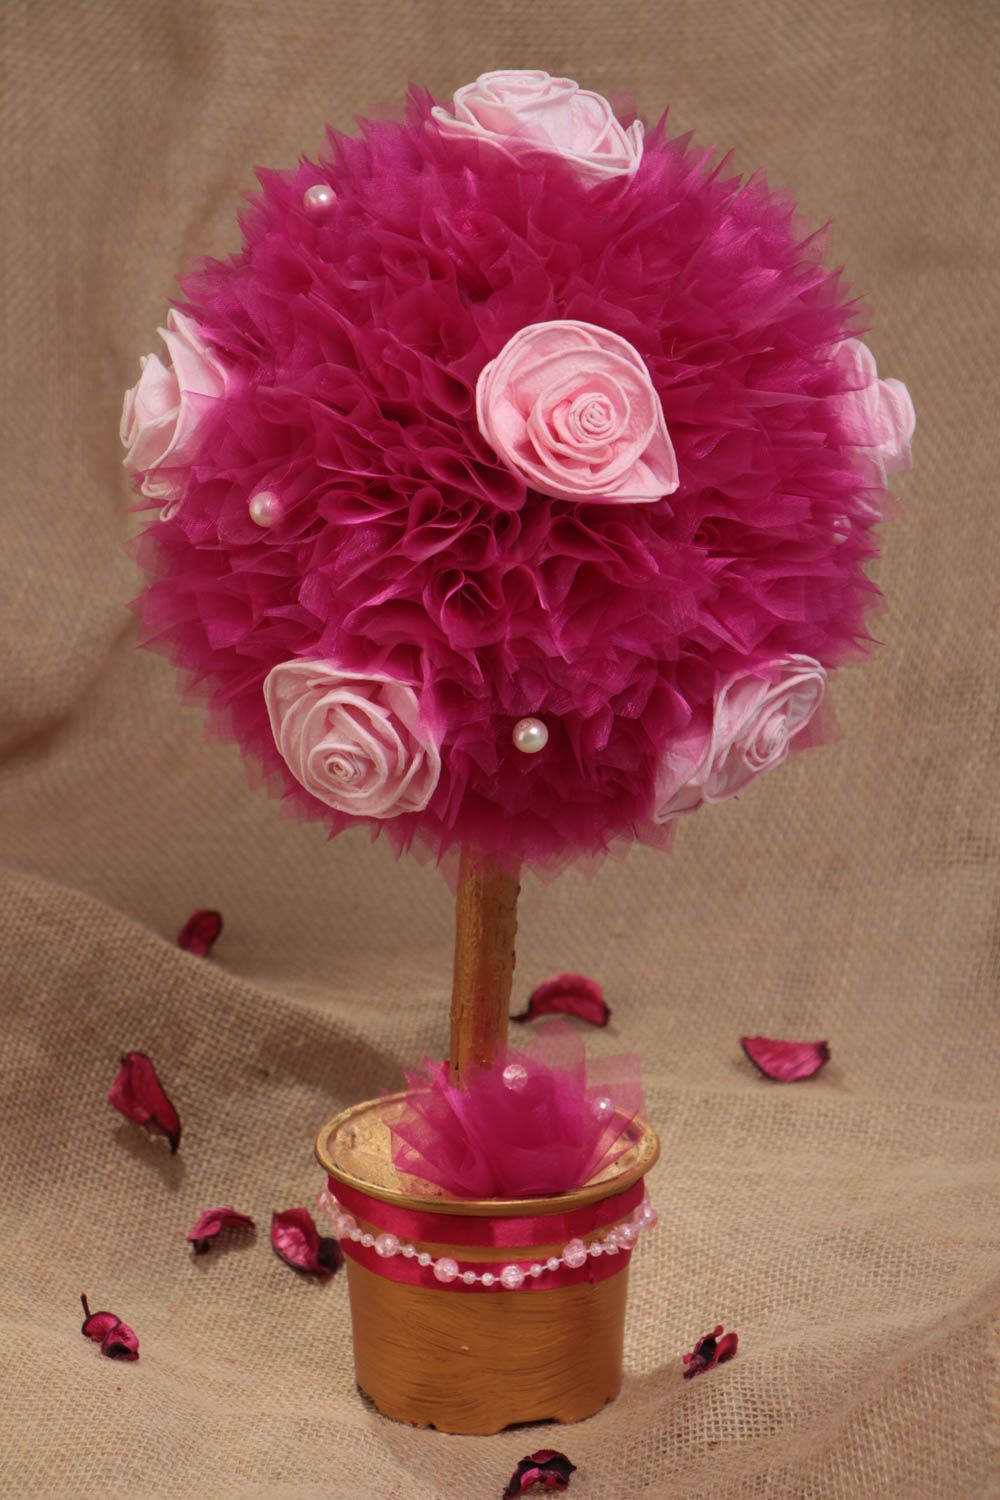 Топиарий из органзы и цветов розовый в горшке небольшого размера ручная работа фото 1